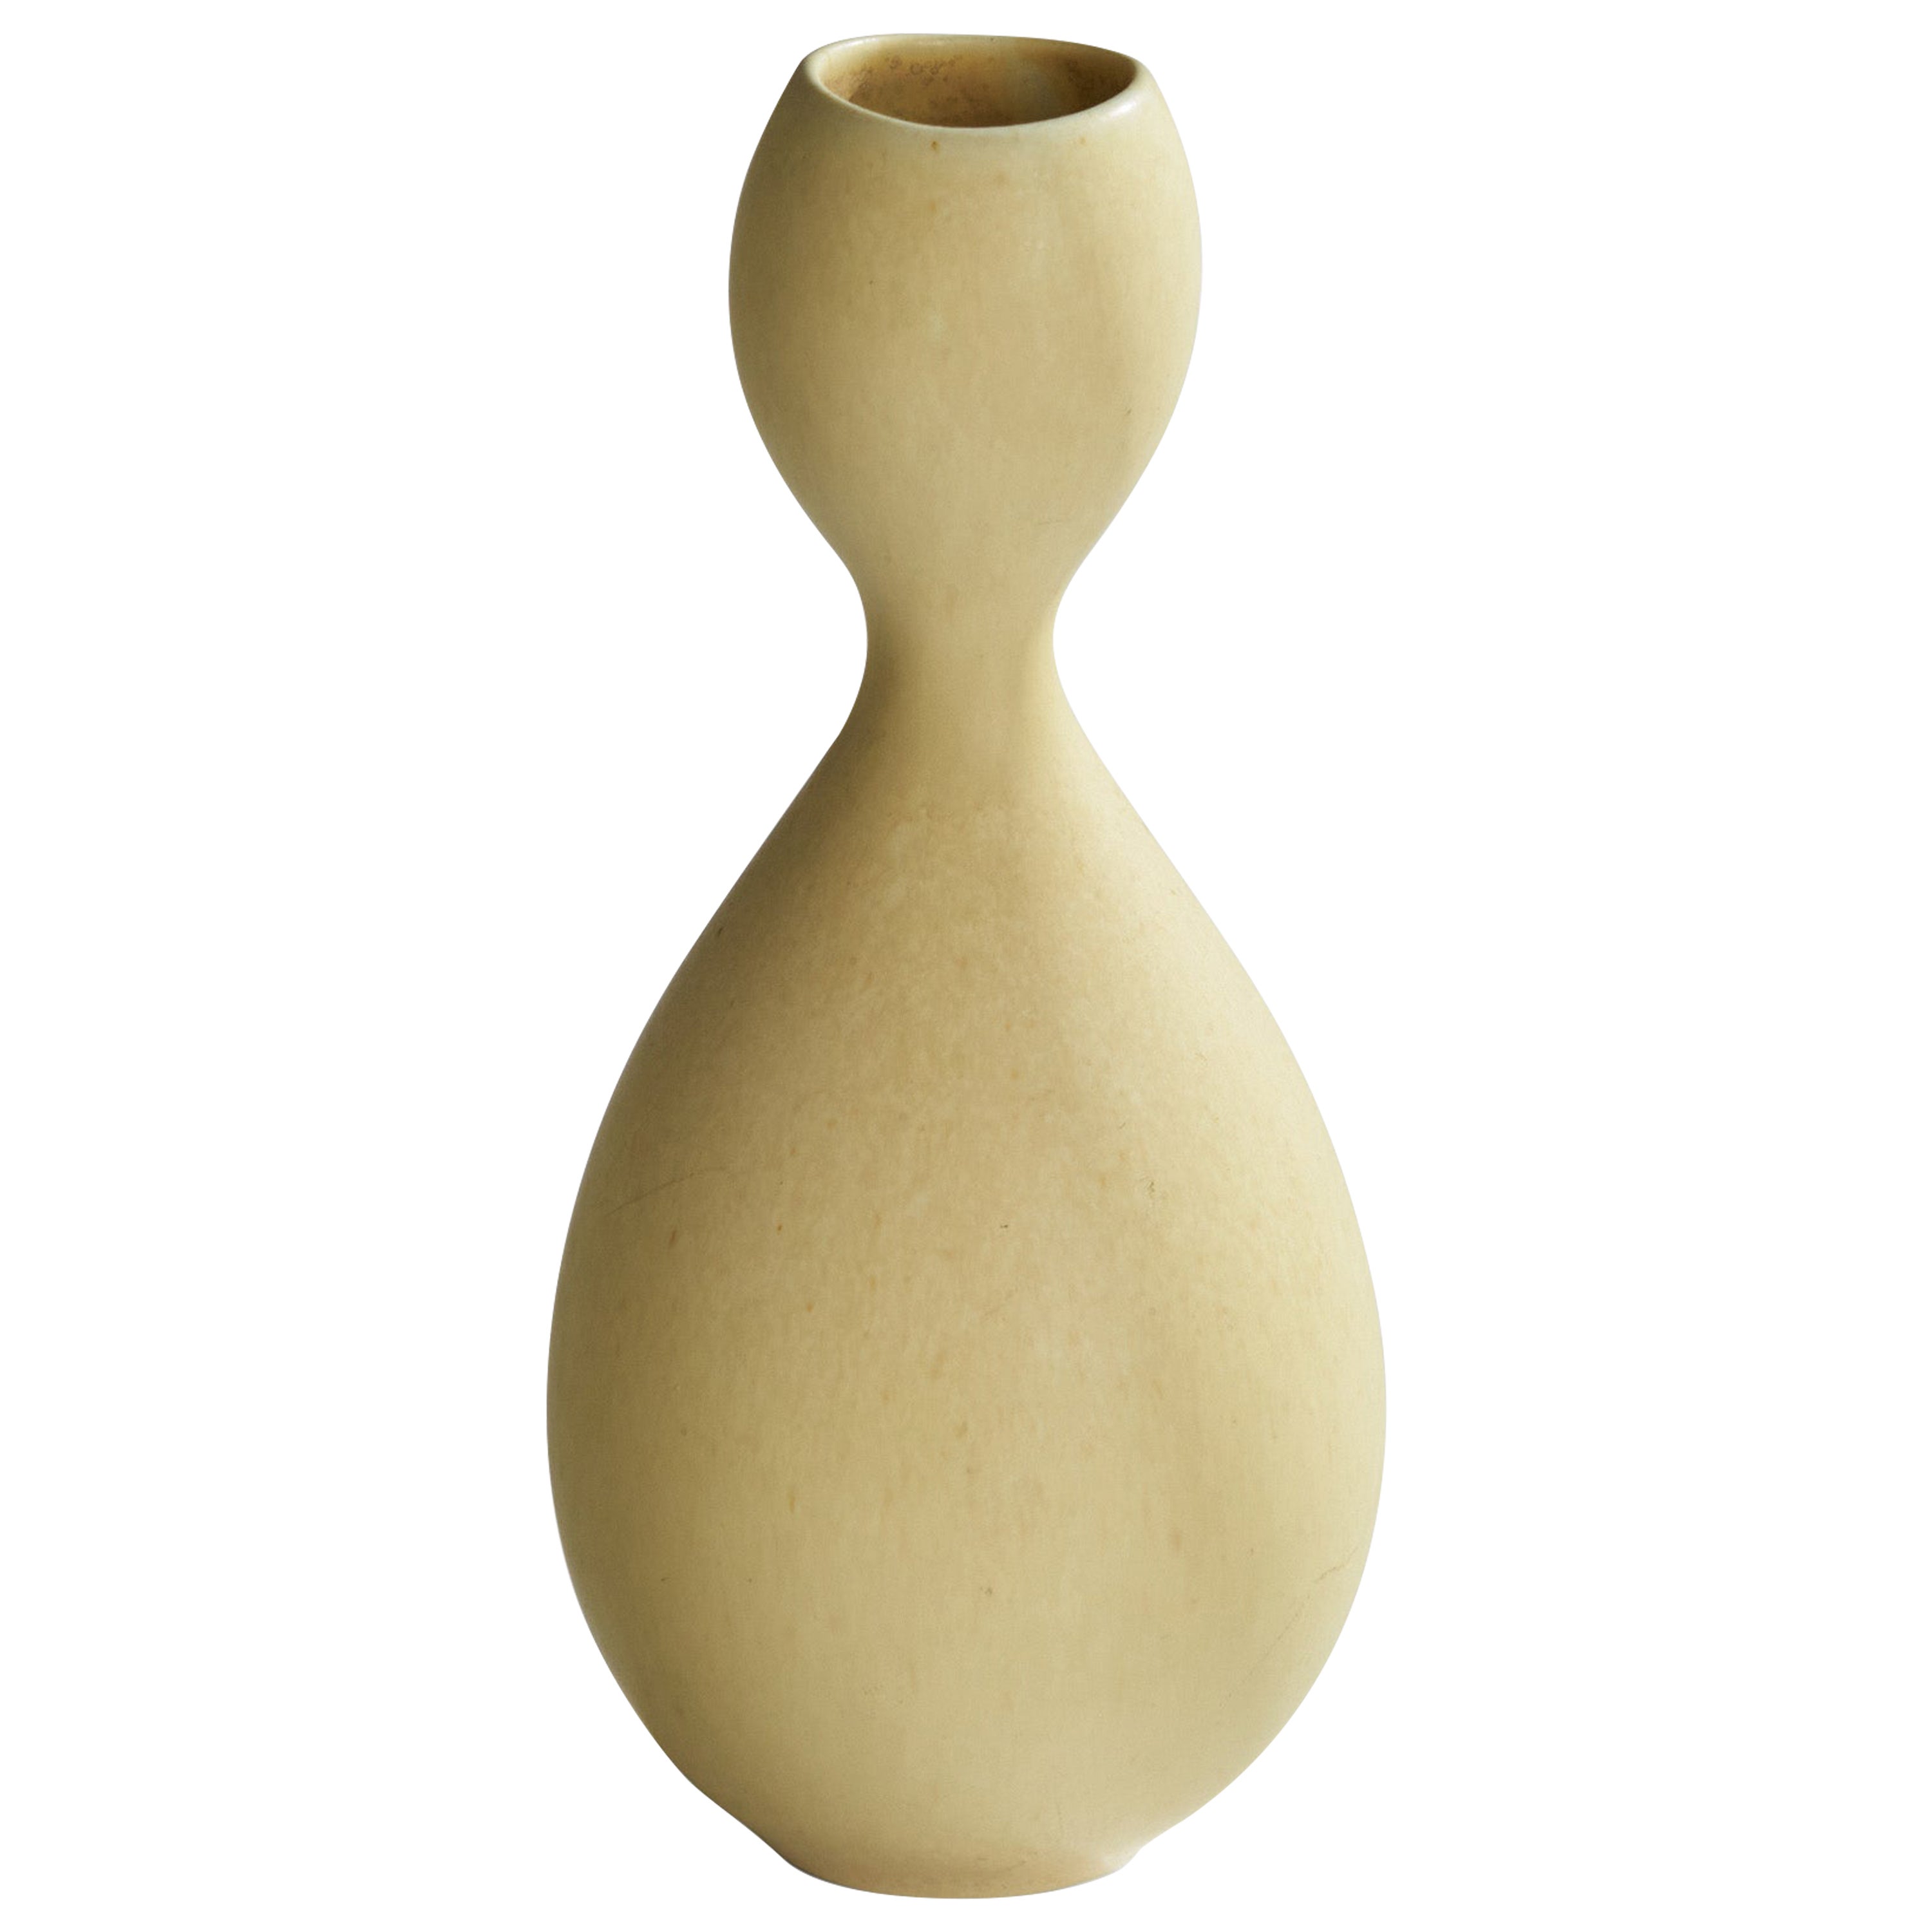 Stig Lindberg, "Vitrin" Vase, Stoneware, Sweden, 1956